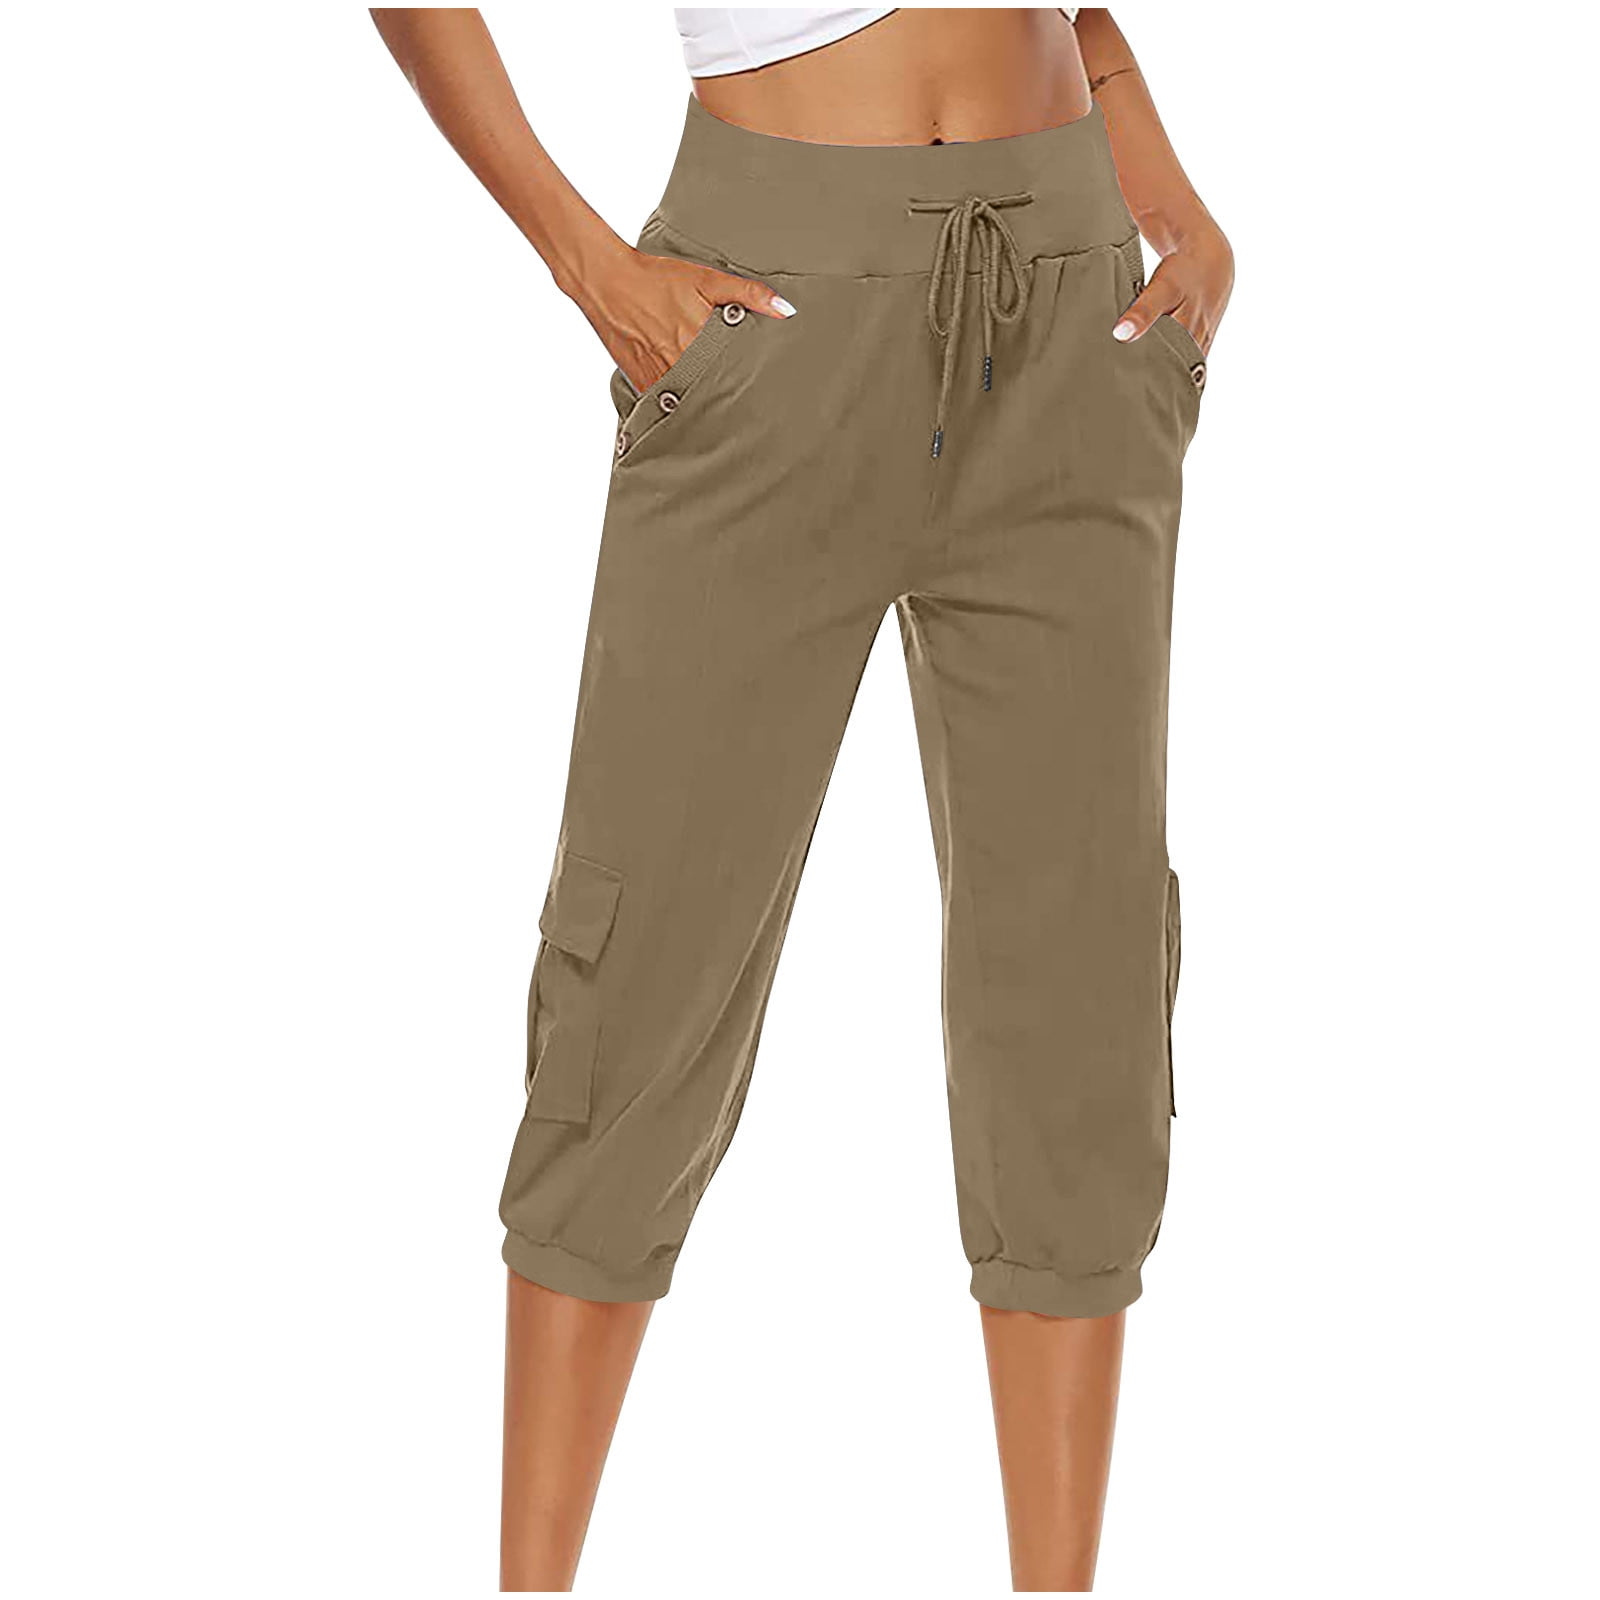 Capri Pants for Women Cotton Linen Plus Size Cargo Pants Capris